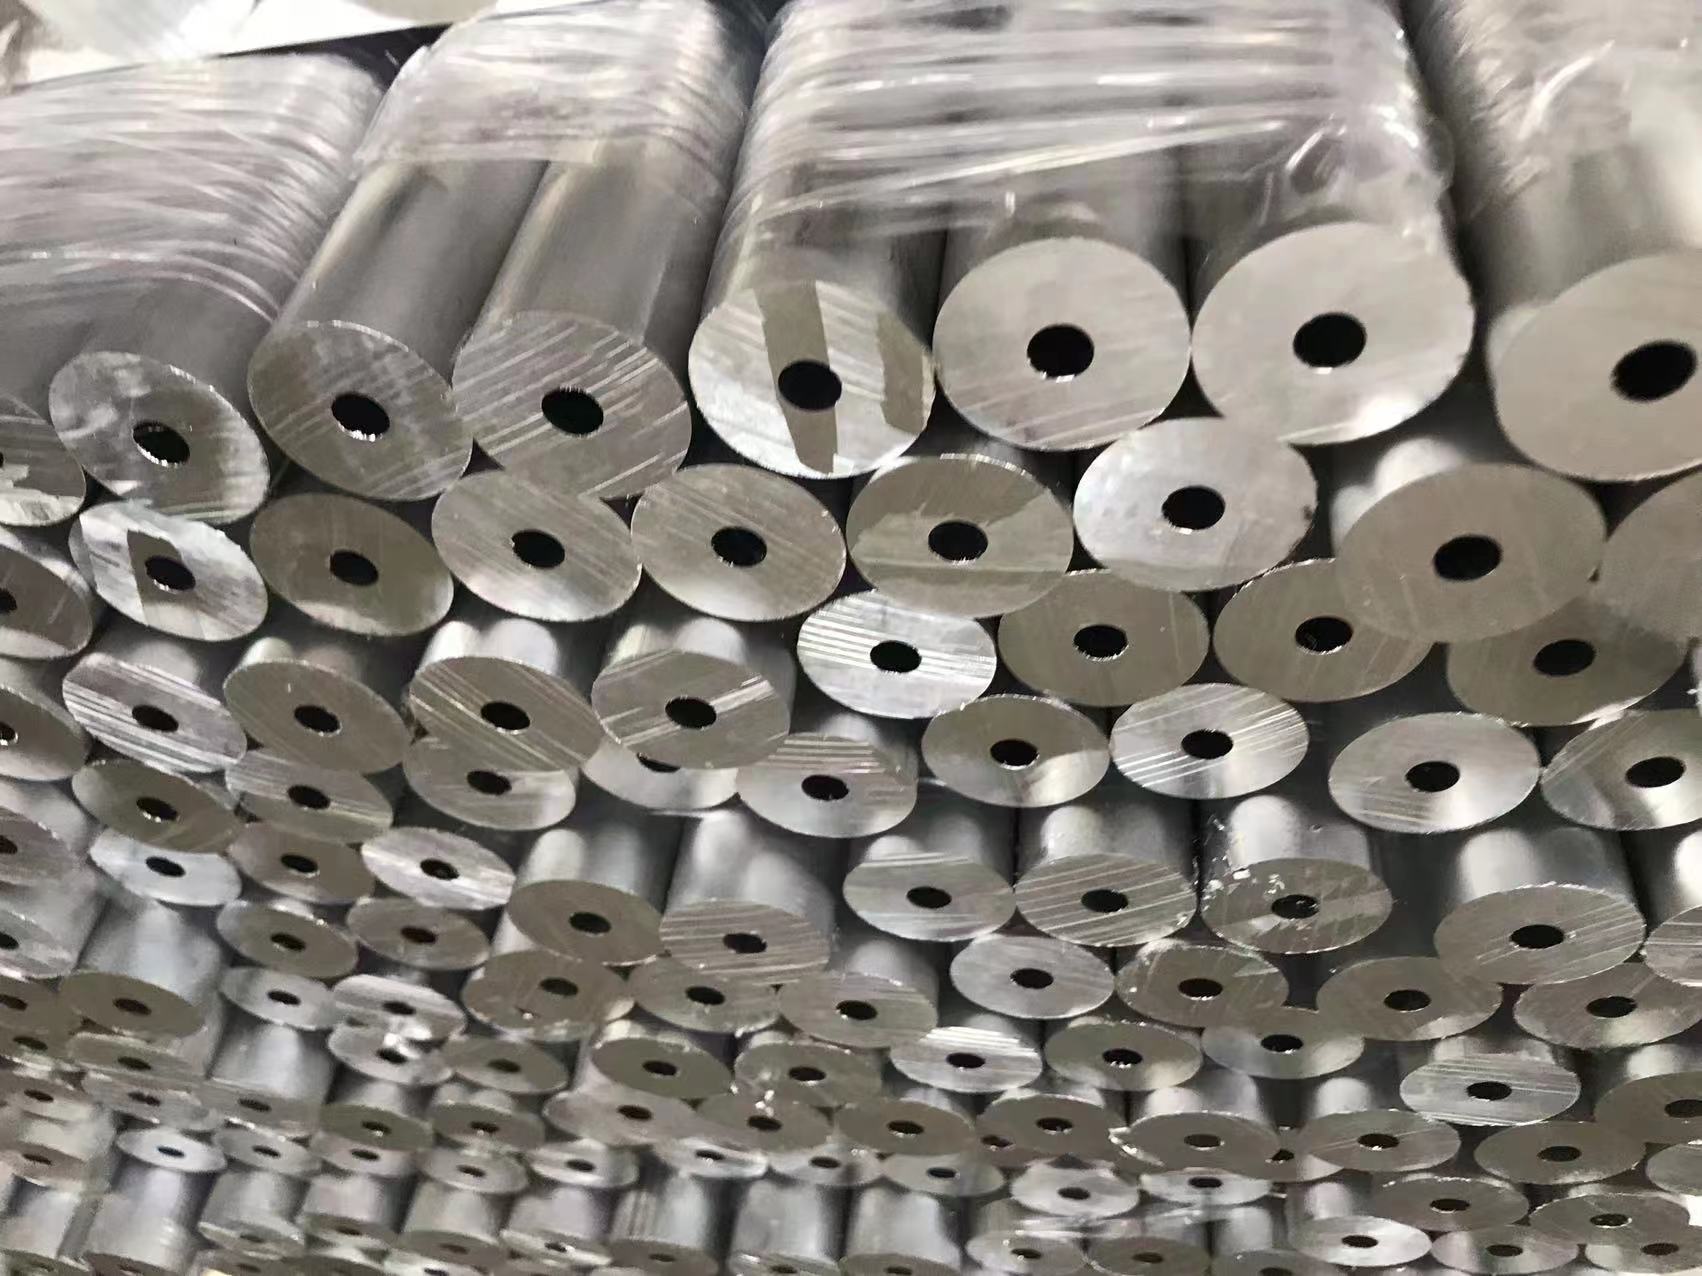 6063铝管 铝合金管沪铝铝业铝方管 铝棒铝排 铝型材定制异型铝材